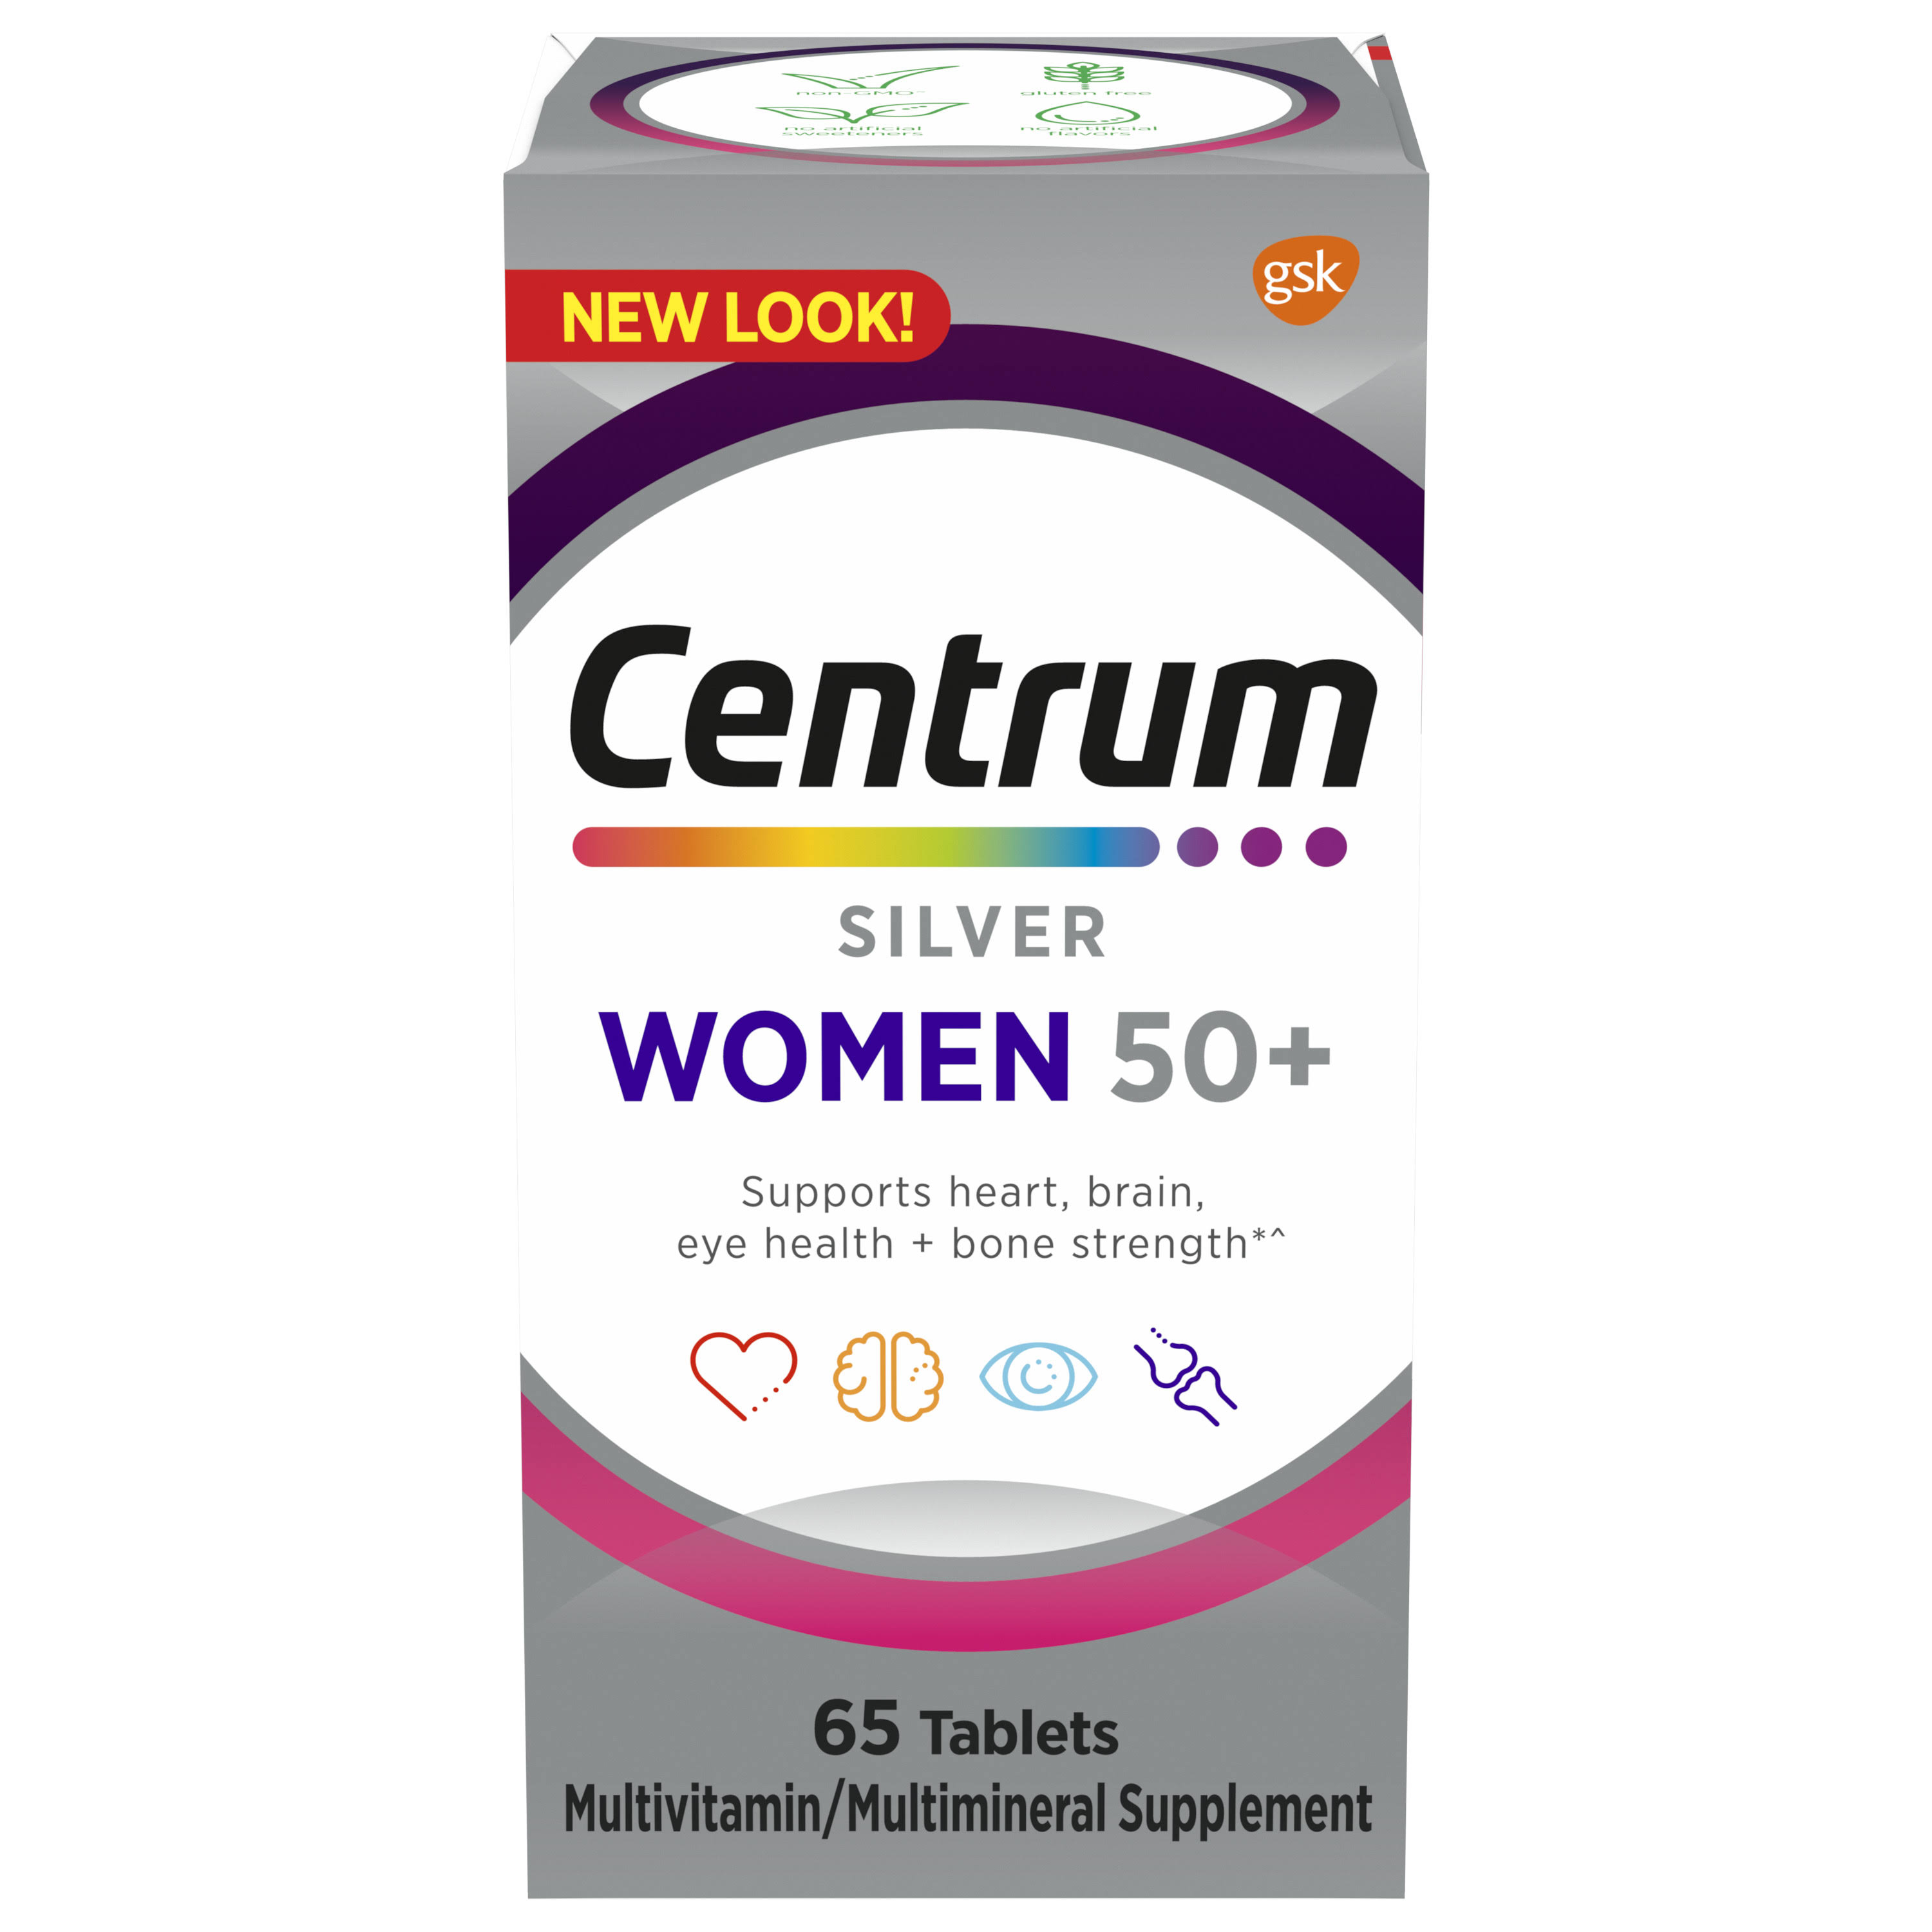 Centrum Silver Multivitamin/Multimineral, Women 50+, Tablets - 65 tablets